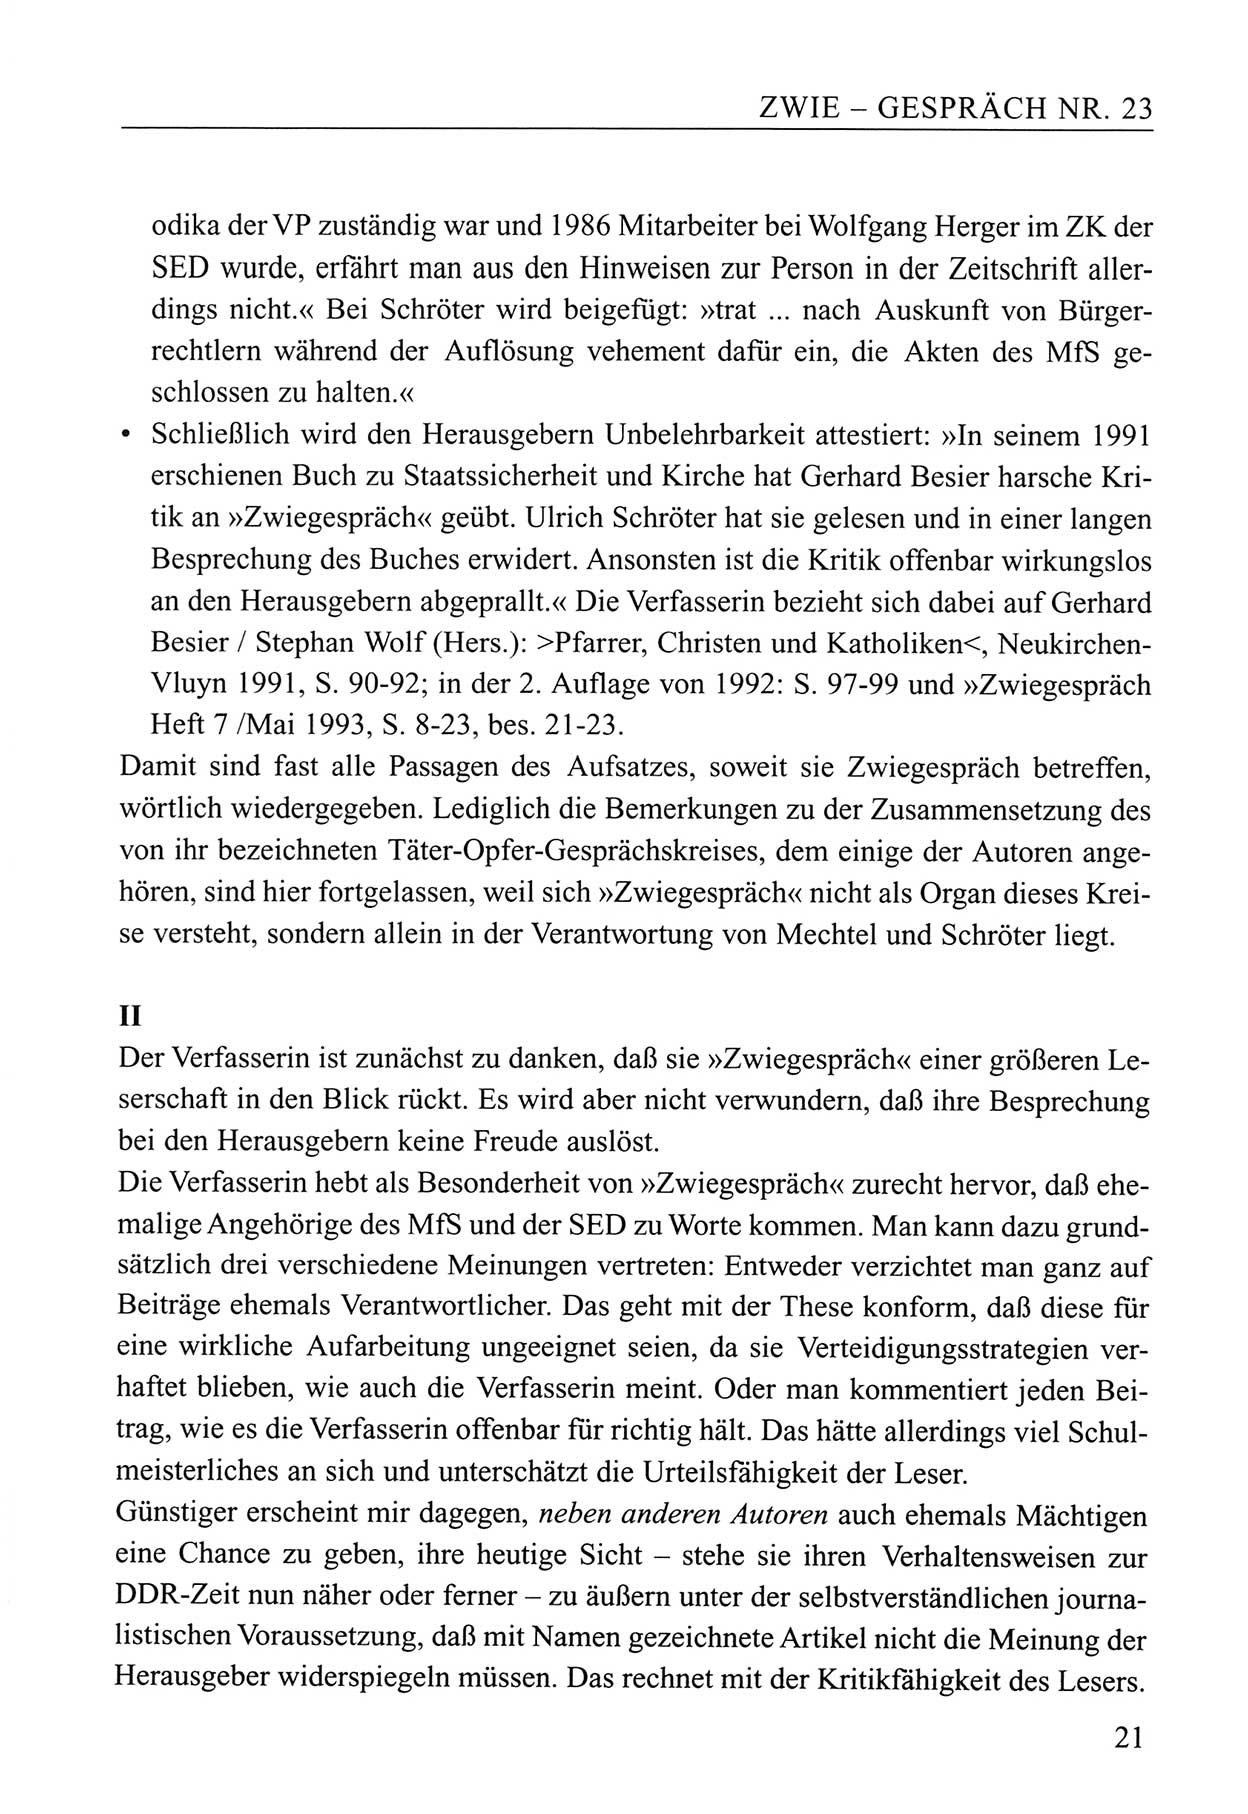 Zwie-Gespräch, Beiträge zum Umgang mit der Staatssicherheits-Vergangenheit [Deutsche Demokratische Republik (DDR)], Ausgabe Nr. 23, Berlin 1994, Seite 21 (Zwie-Gespr. Ausg. 23 1994, S. 21)